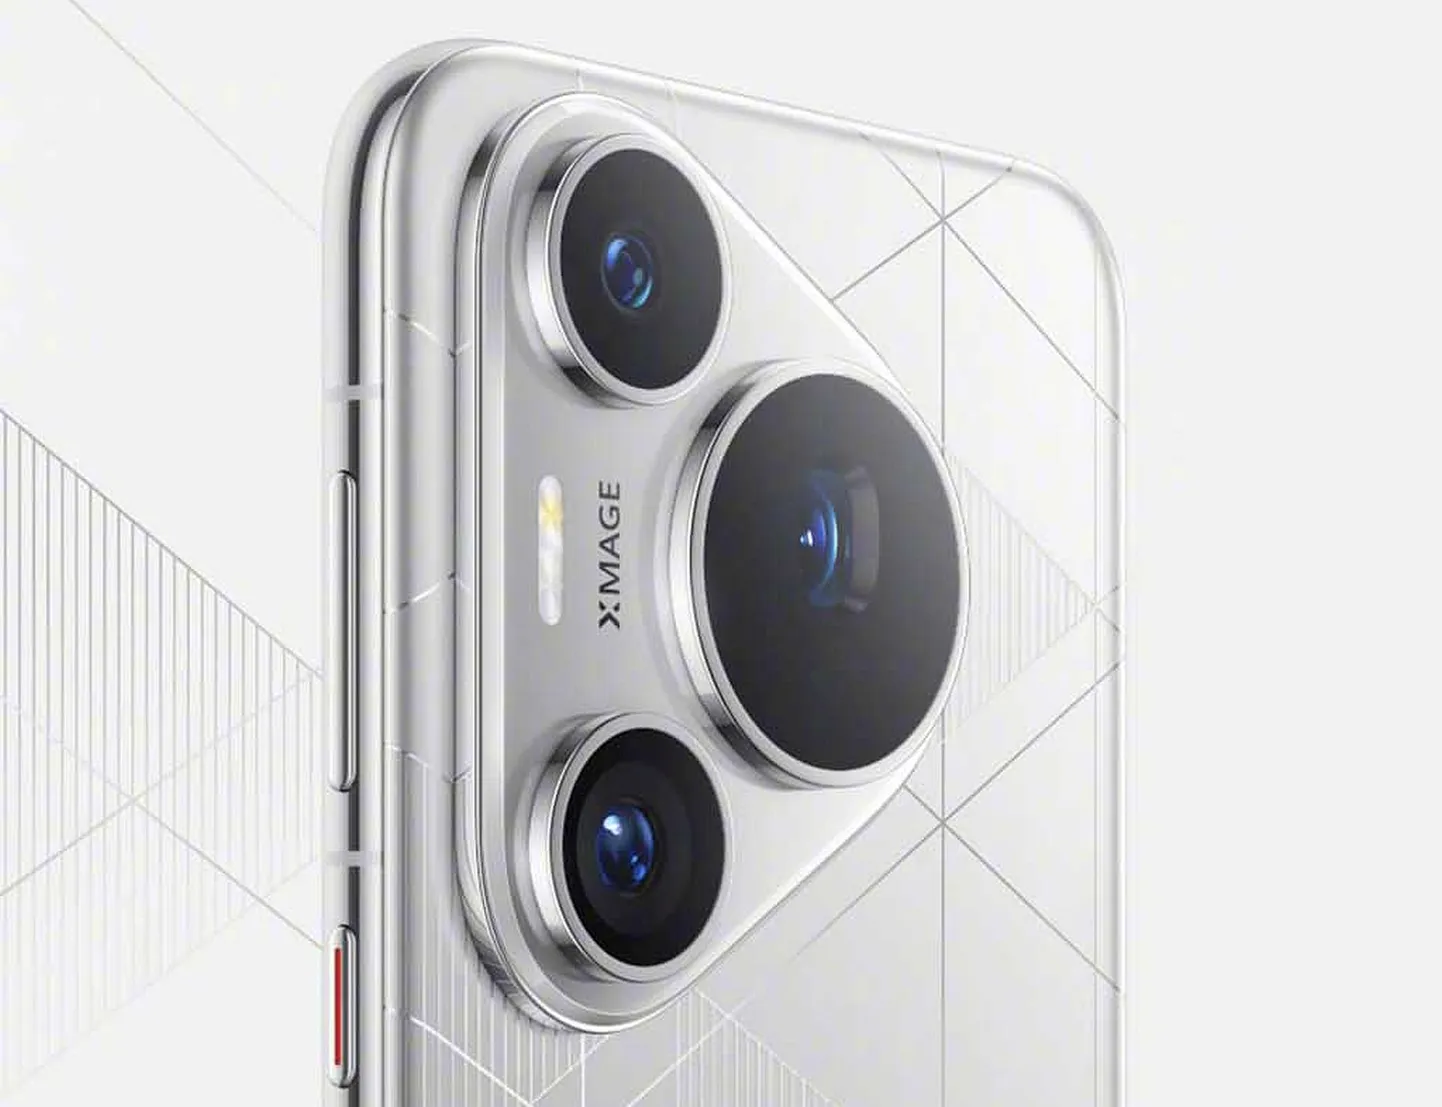 Huawei uus tipptelefon Pura 70 pürib maailma parima kaameraga mobiili tiitlile, nii nagu oli eelmise Mate 60 mudeliga. Vaatamata USA sanktsioonidele on Hiina tootja arendanud uudismudelile oma kiibistiku ja 5G kiirusega andmeside.